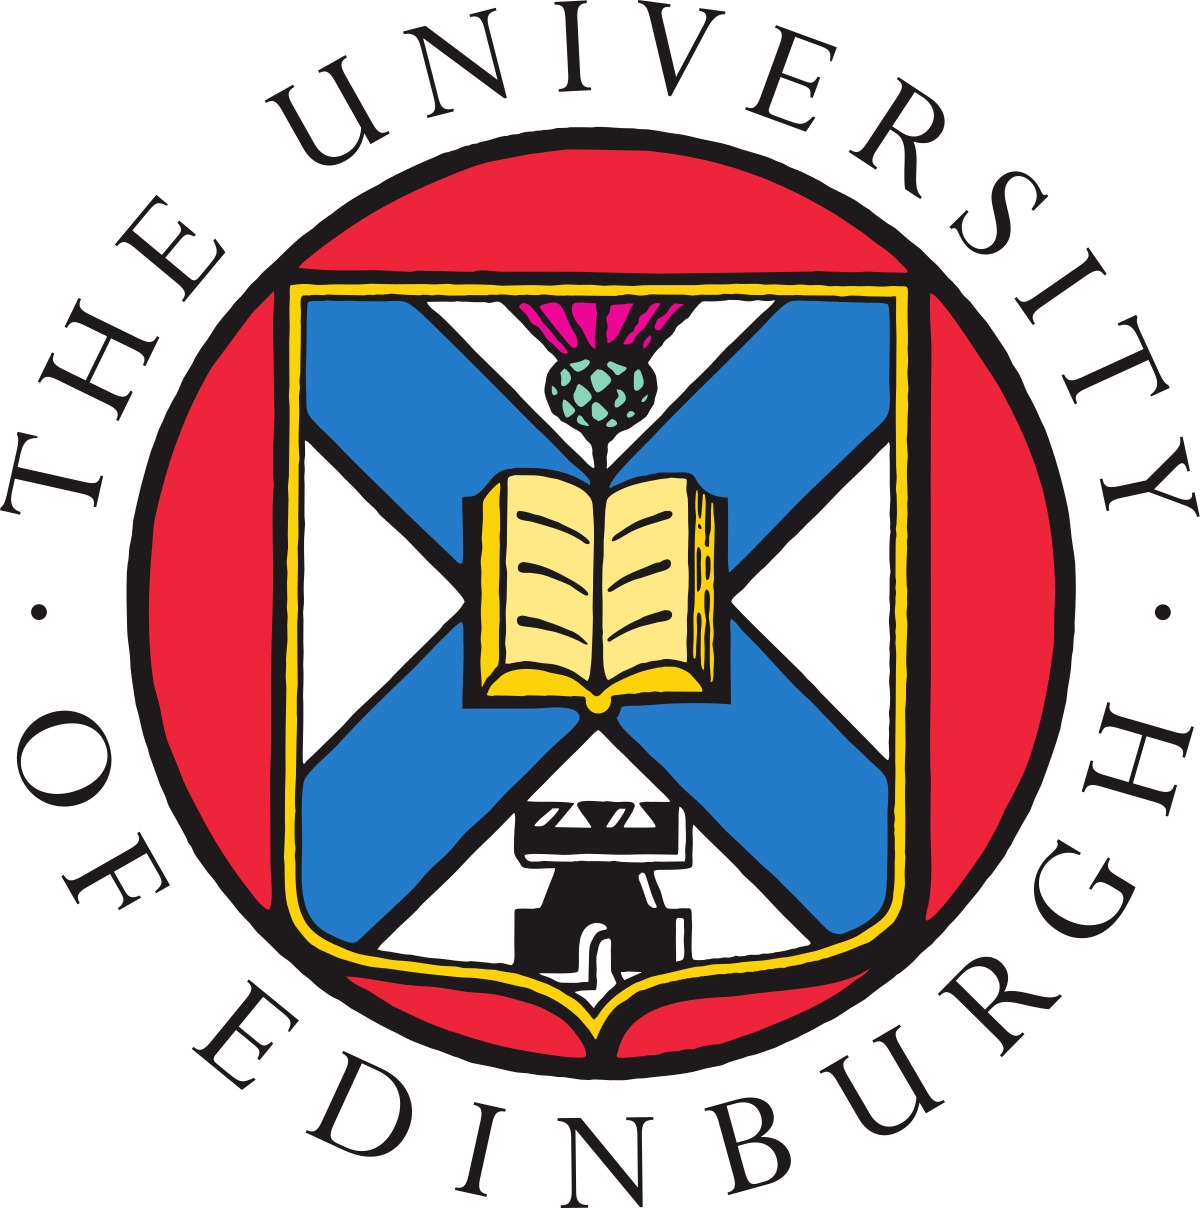 University of Edinburg